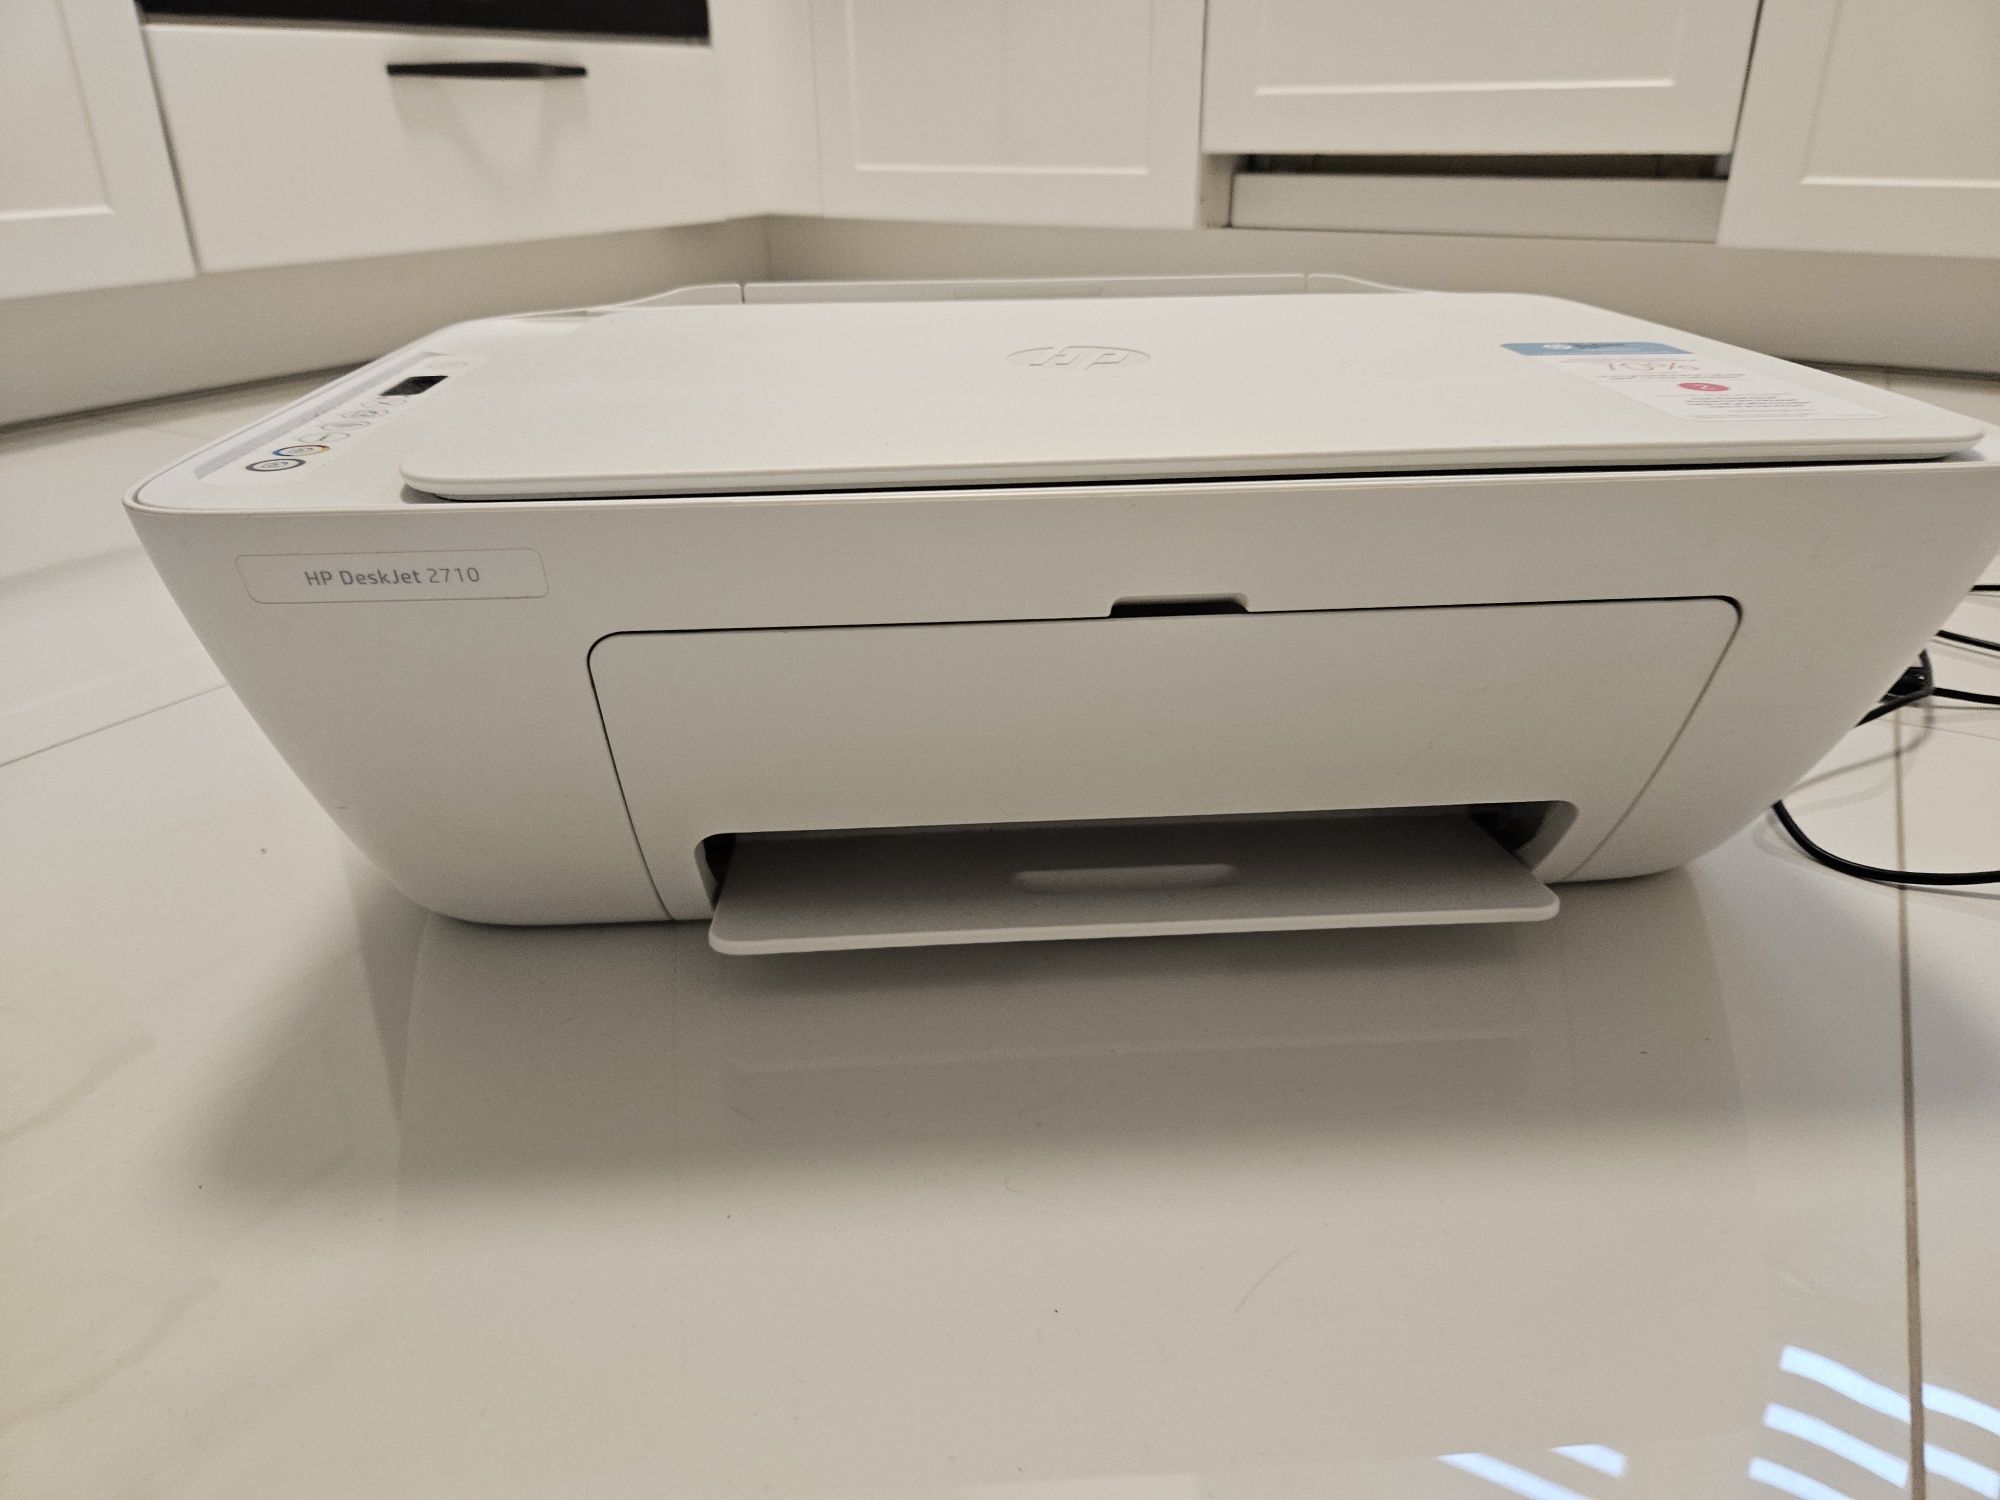 Drukarka HP DeskJet 2710 sprawna biała